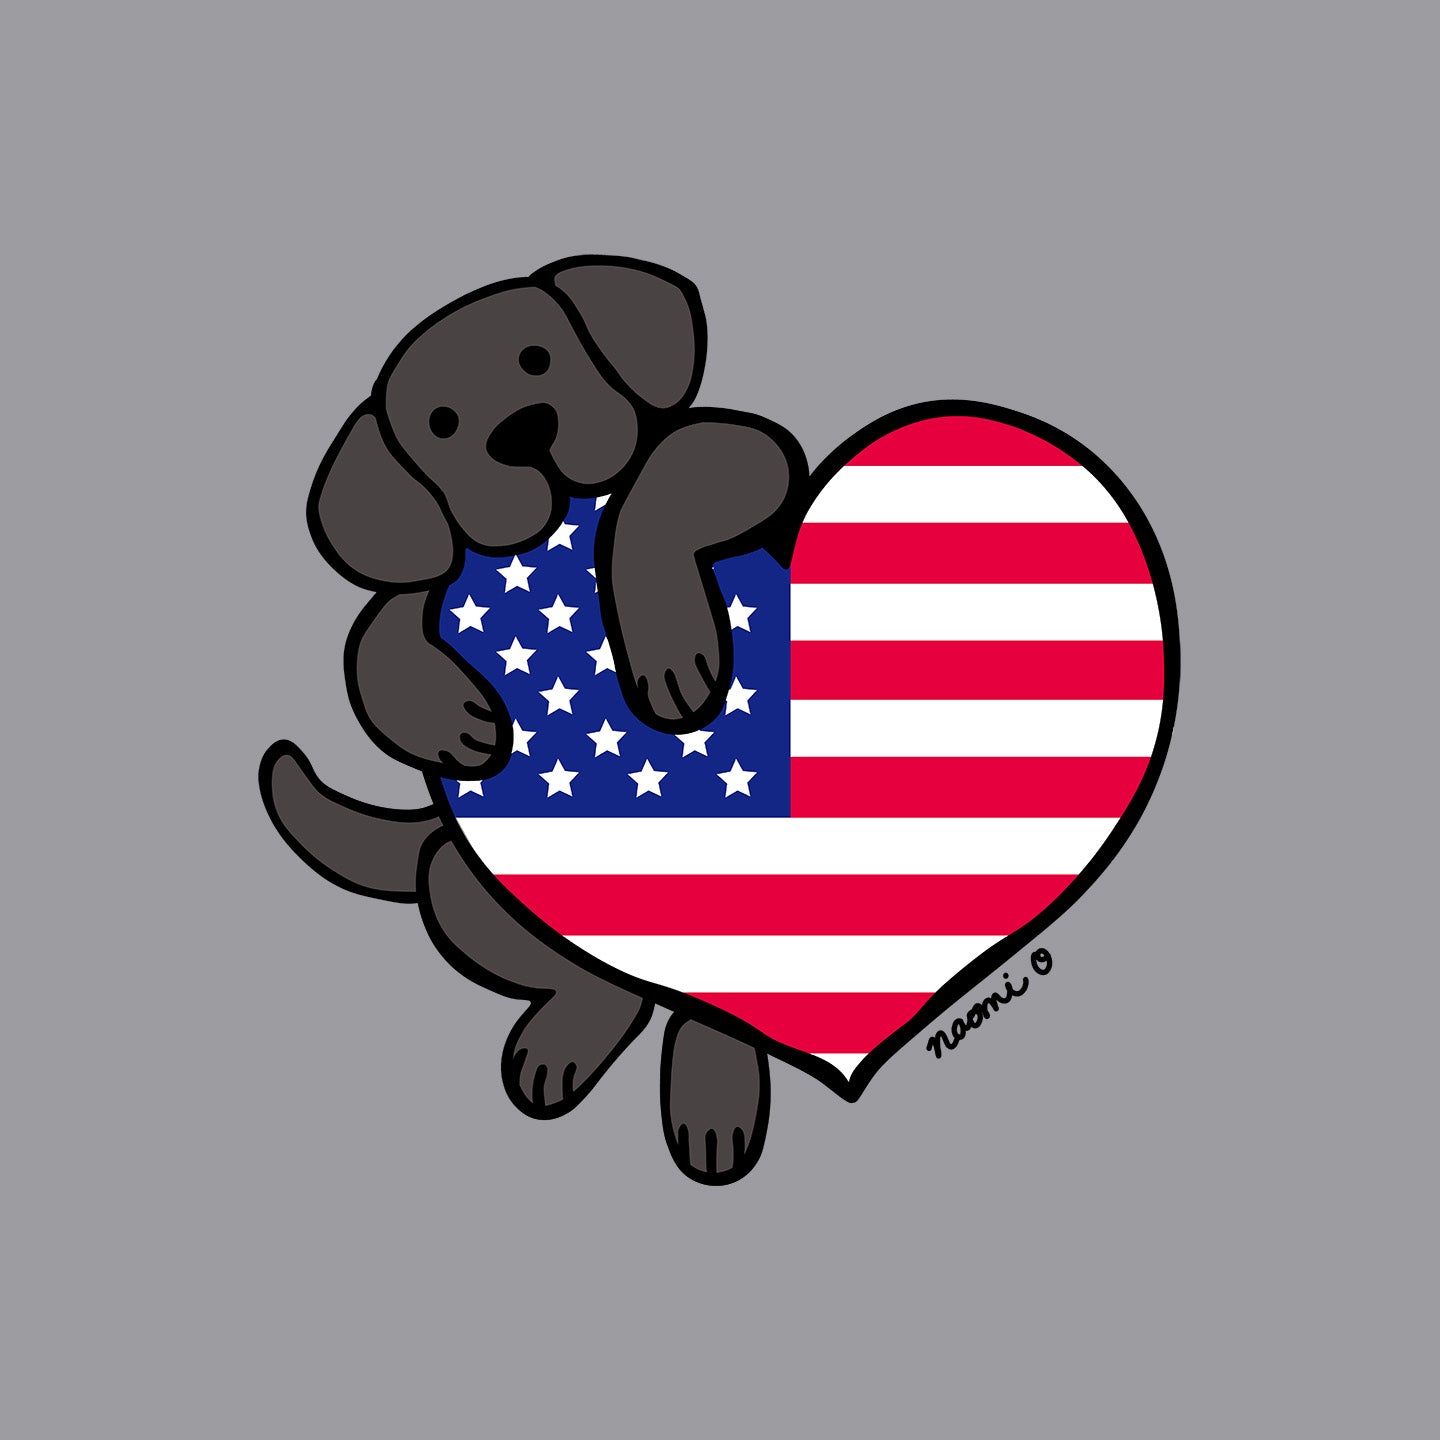 USA Flag Heart Black Lab Left Chest - Kids' Unisex T-Shirt